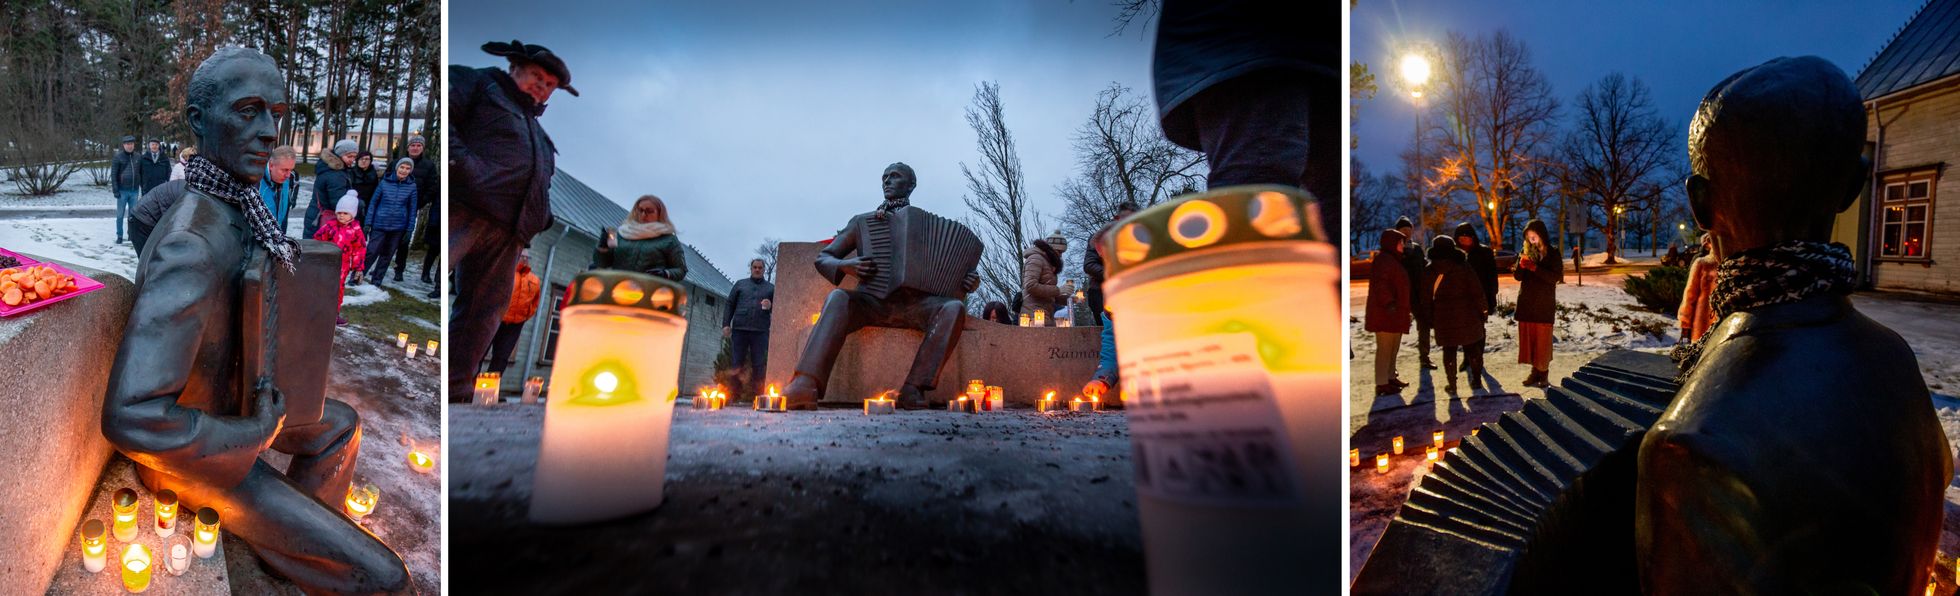 В последний день года жители Пярну собрались возле памятника Раймонду Валгре, чтобы почтить память легендарного композитора в годовщину его смерти.